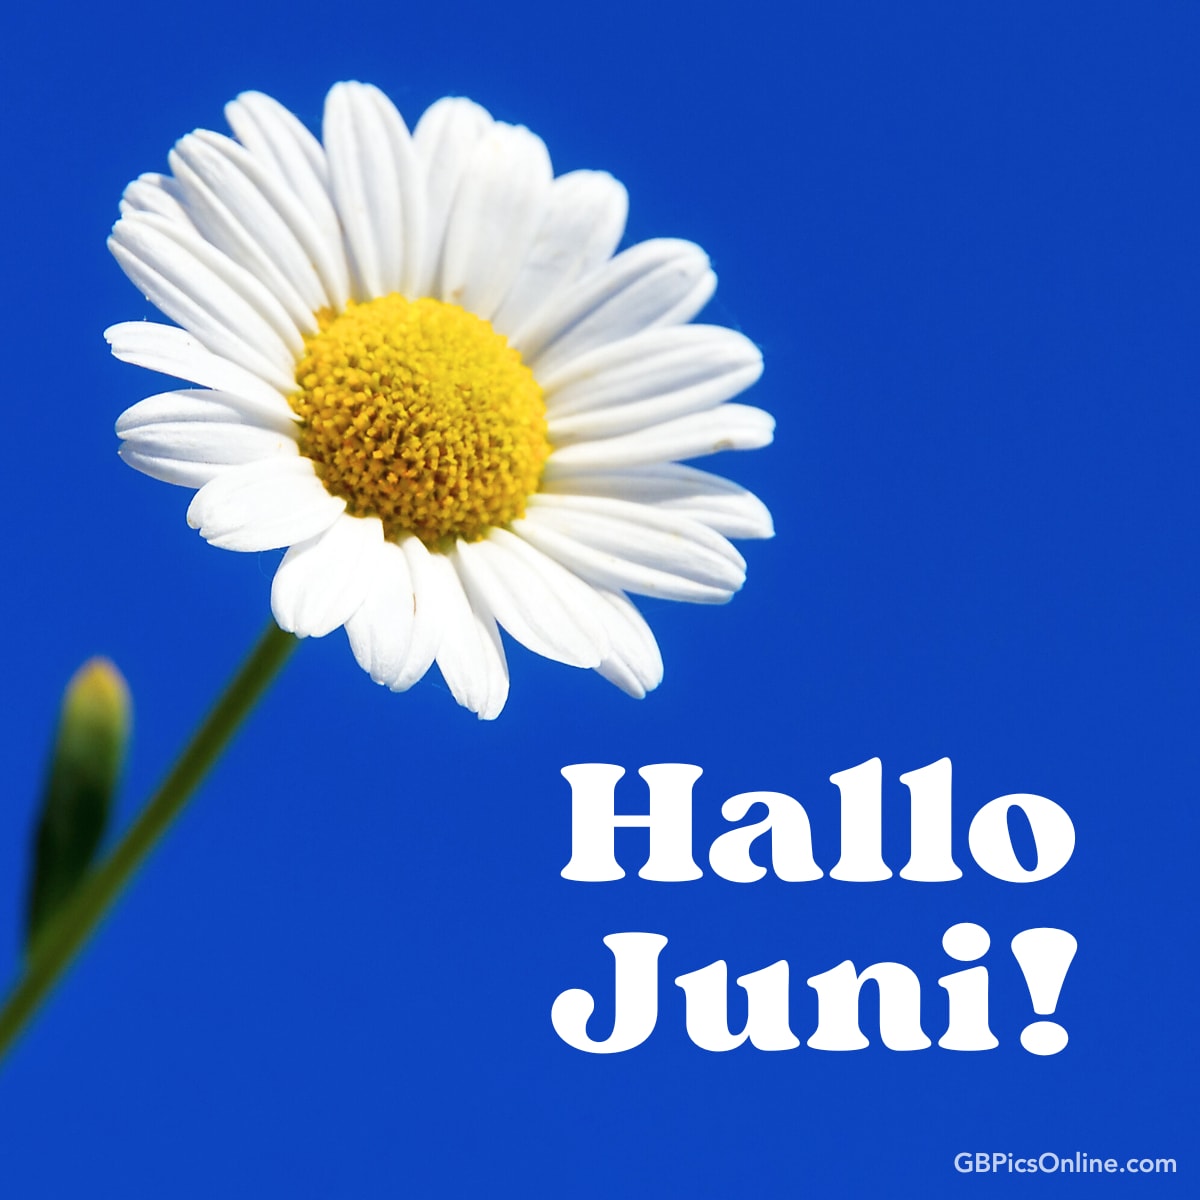 Eine Gänseblümchen vor blauem Himmel mit der Aufschrift „Hallo Juni!“